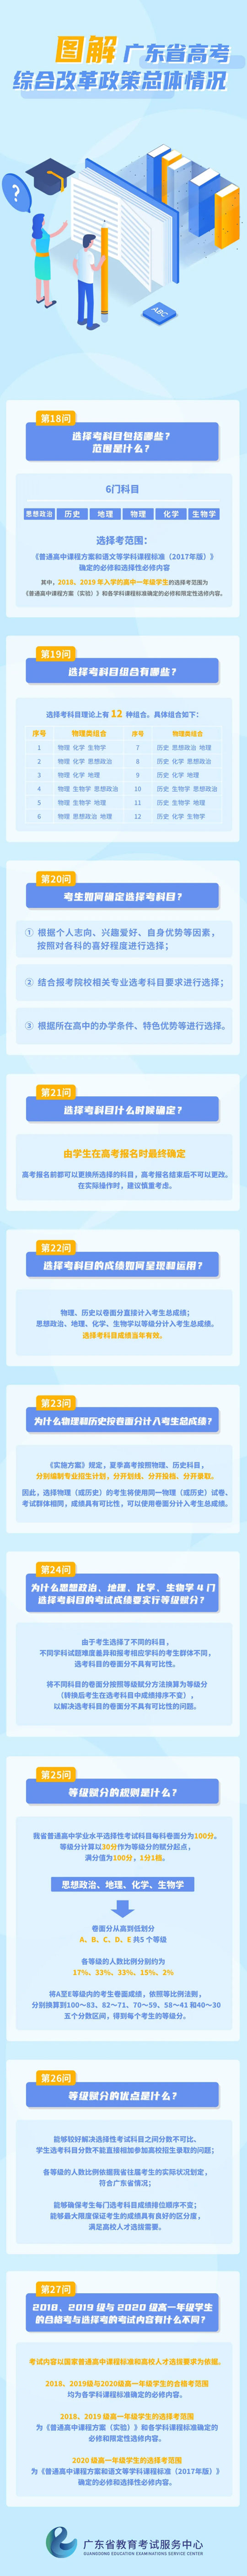 图解广东省高考综合改革政策总体情况